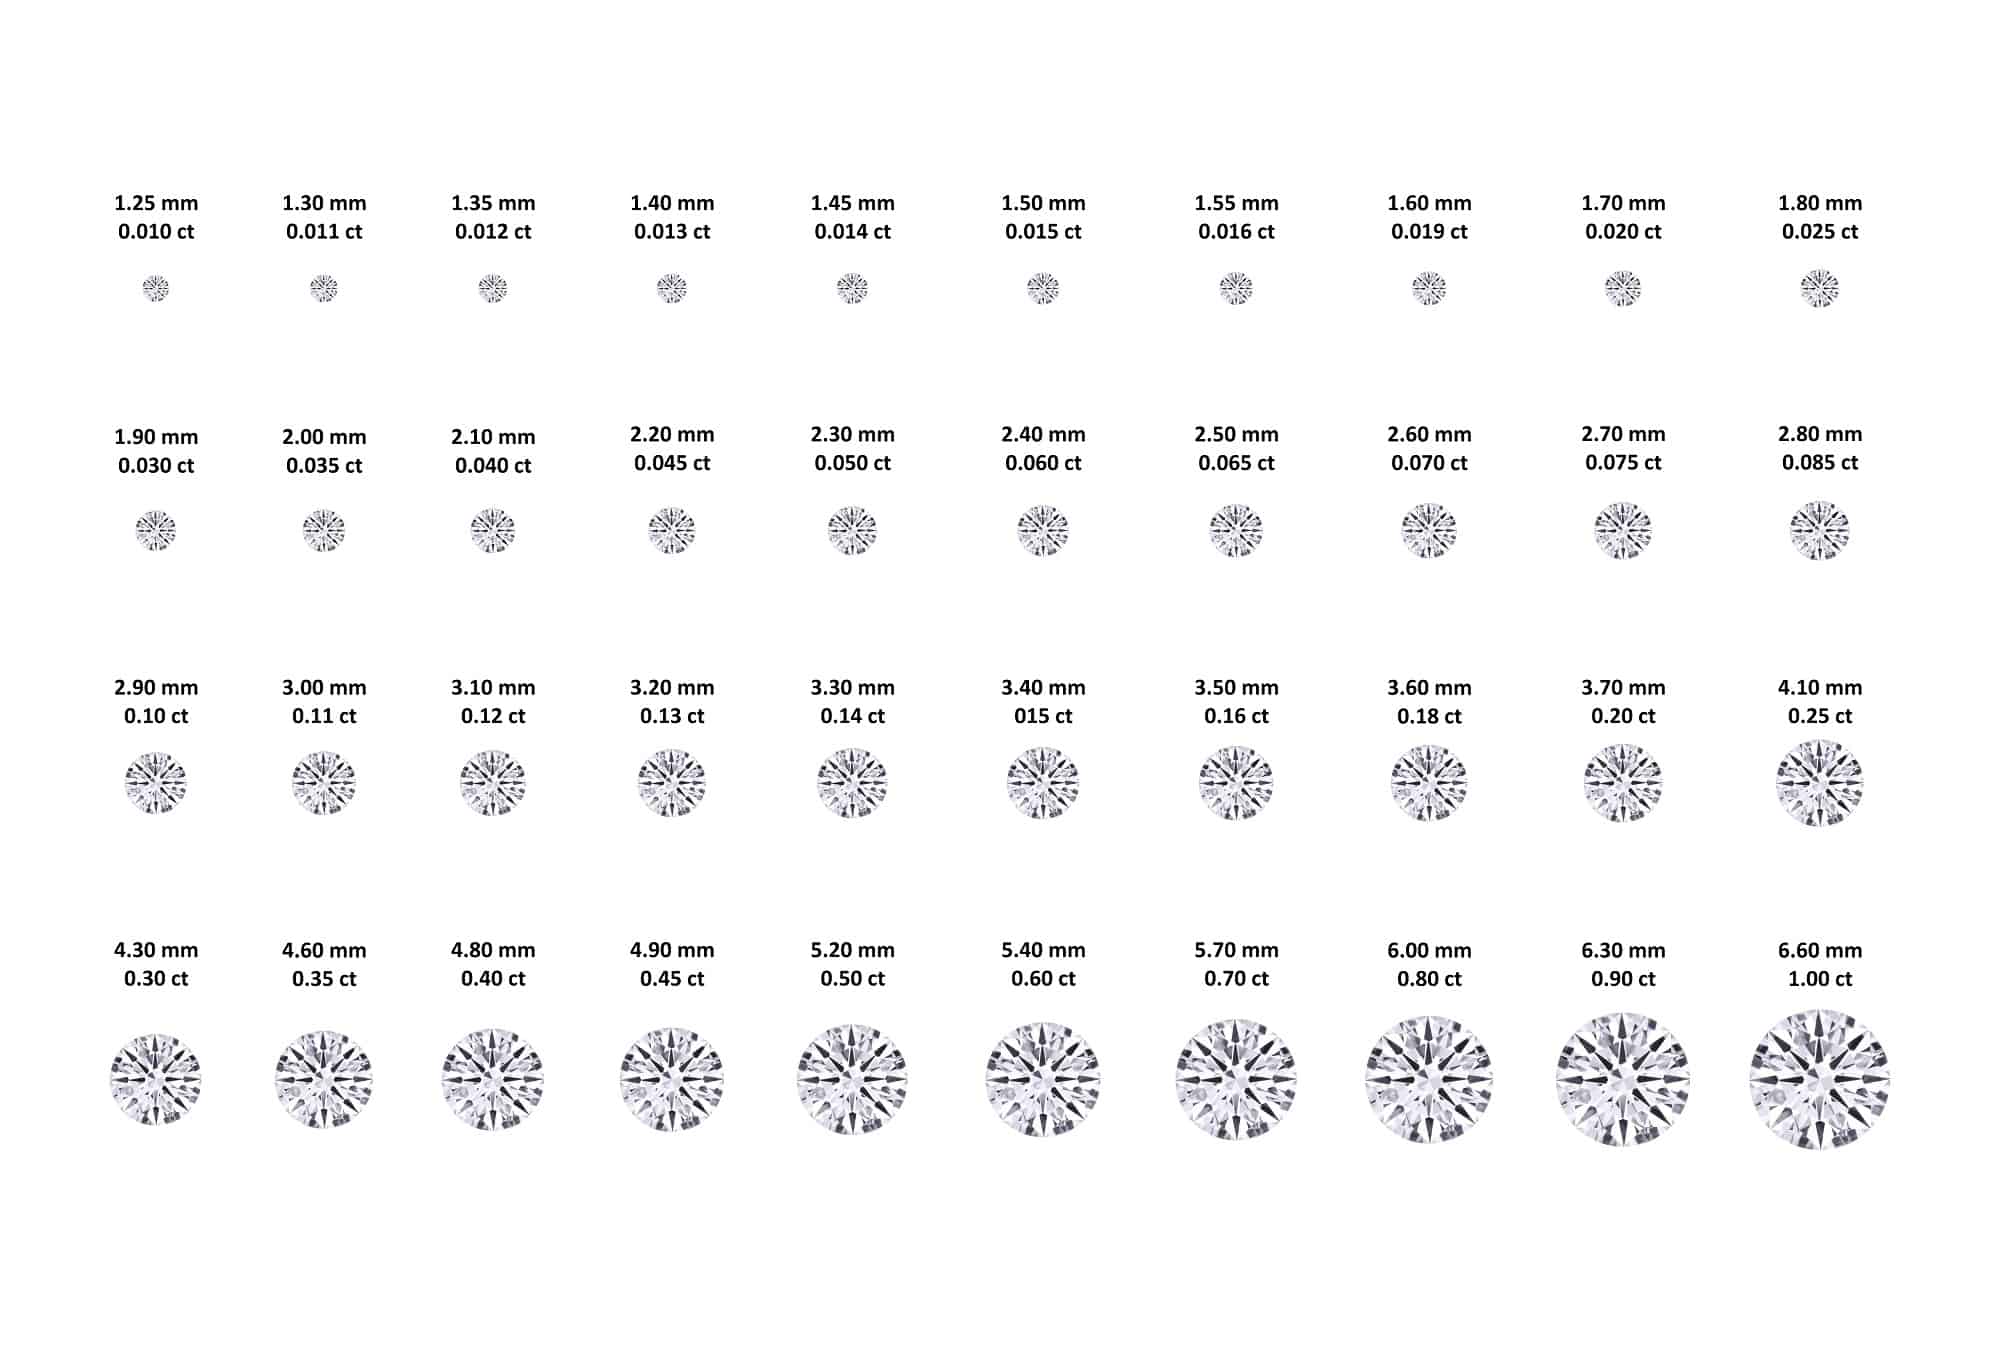 Diamond Size Chart, Size of Diamonds by MM  Diamond size chart, Diamond  carat size chart, Diamond carat size